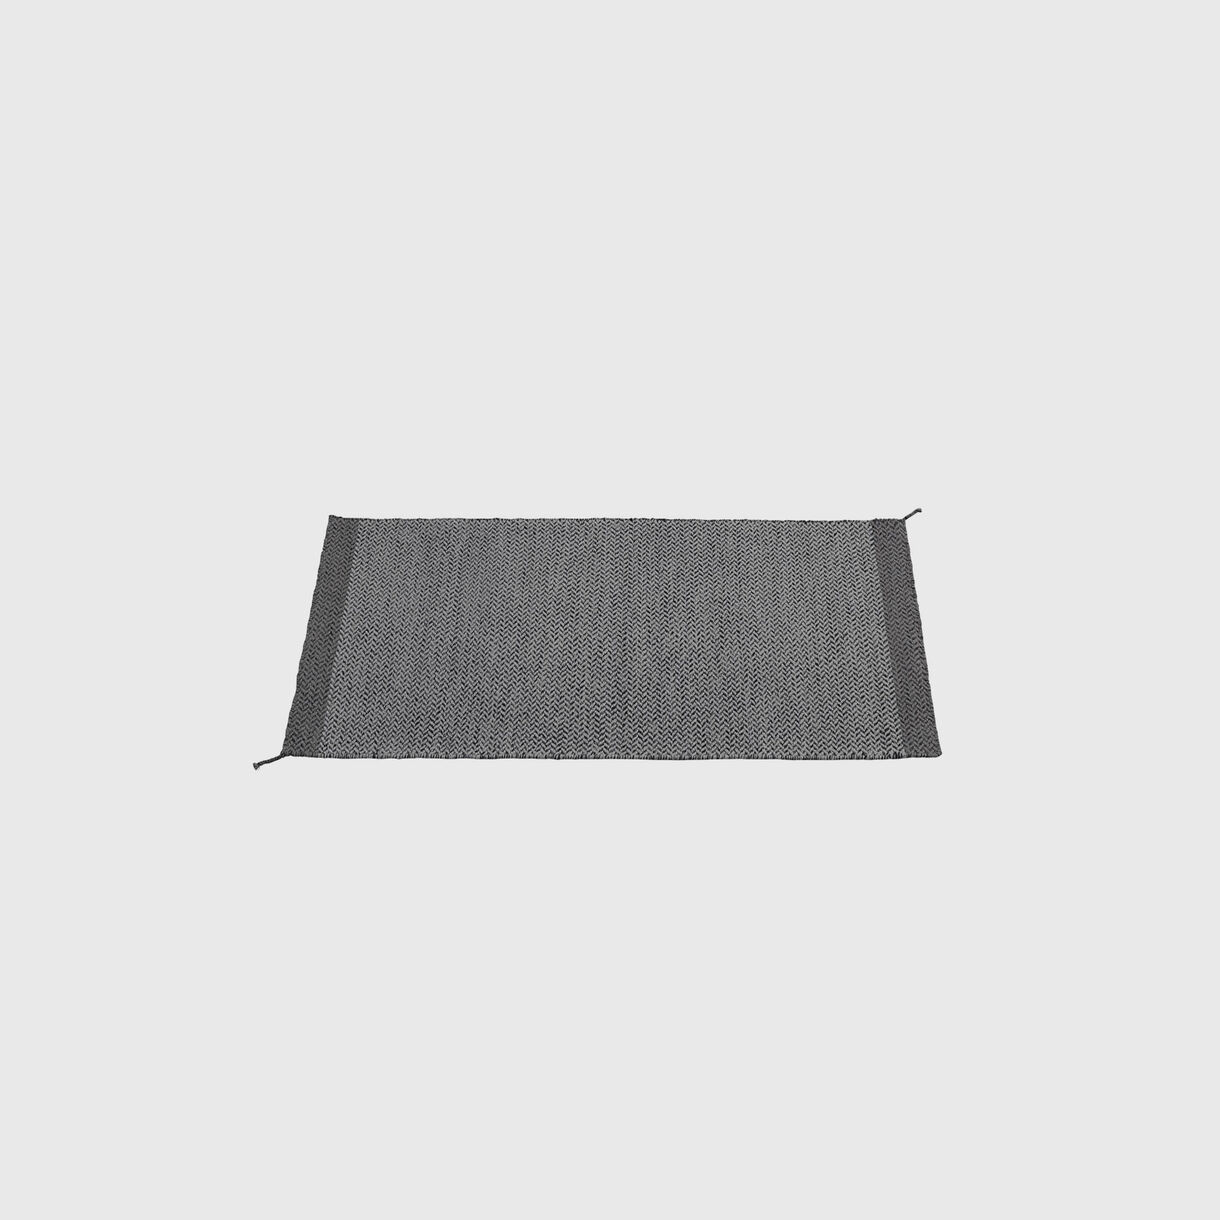 Ply Rug, 850 x 1400mm, Dark Grey